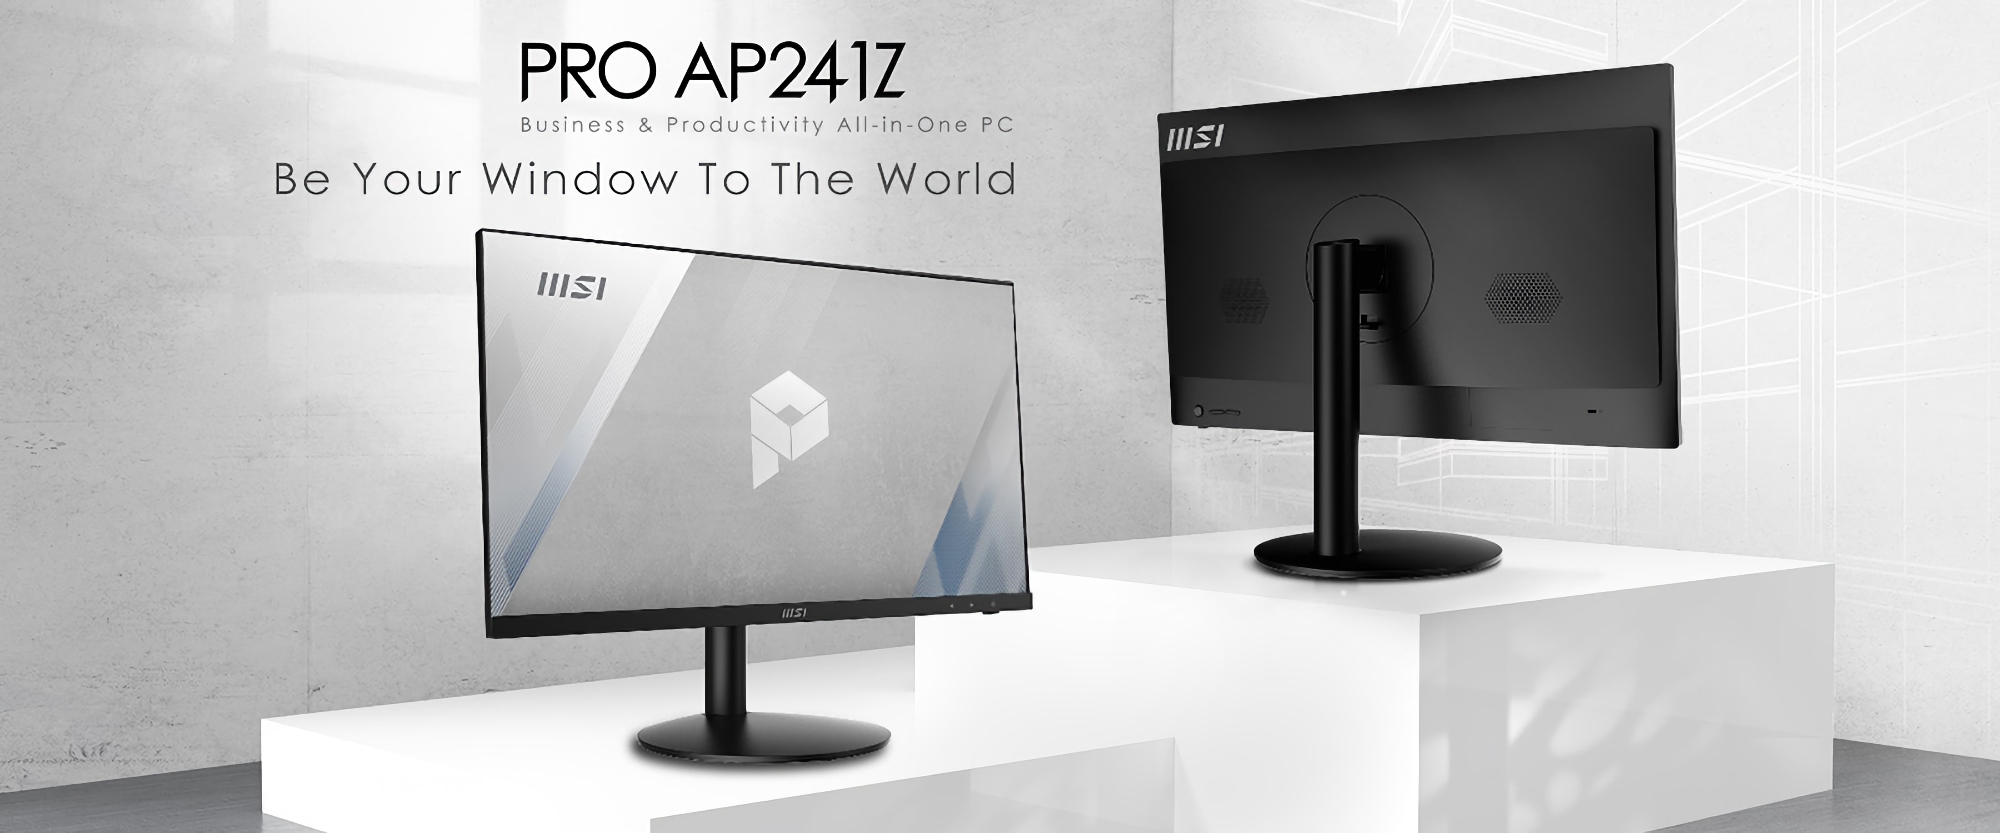 MSI annuncia PRO AP241Z: All-in-One da 24" con processore AMD Ryzen 7 5700G e Windows 11 integrato